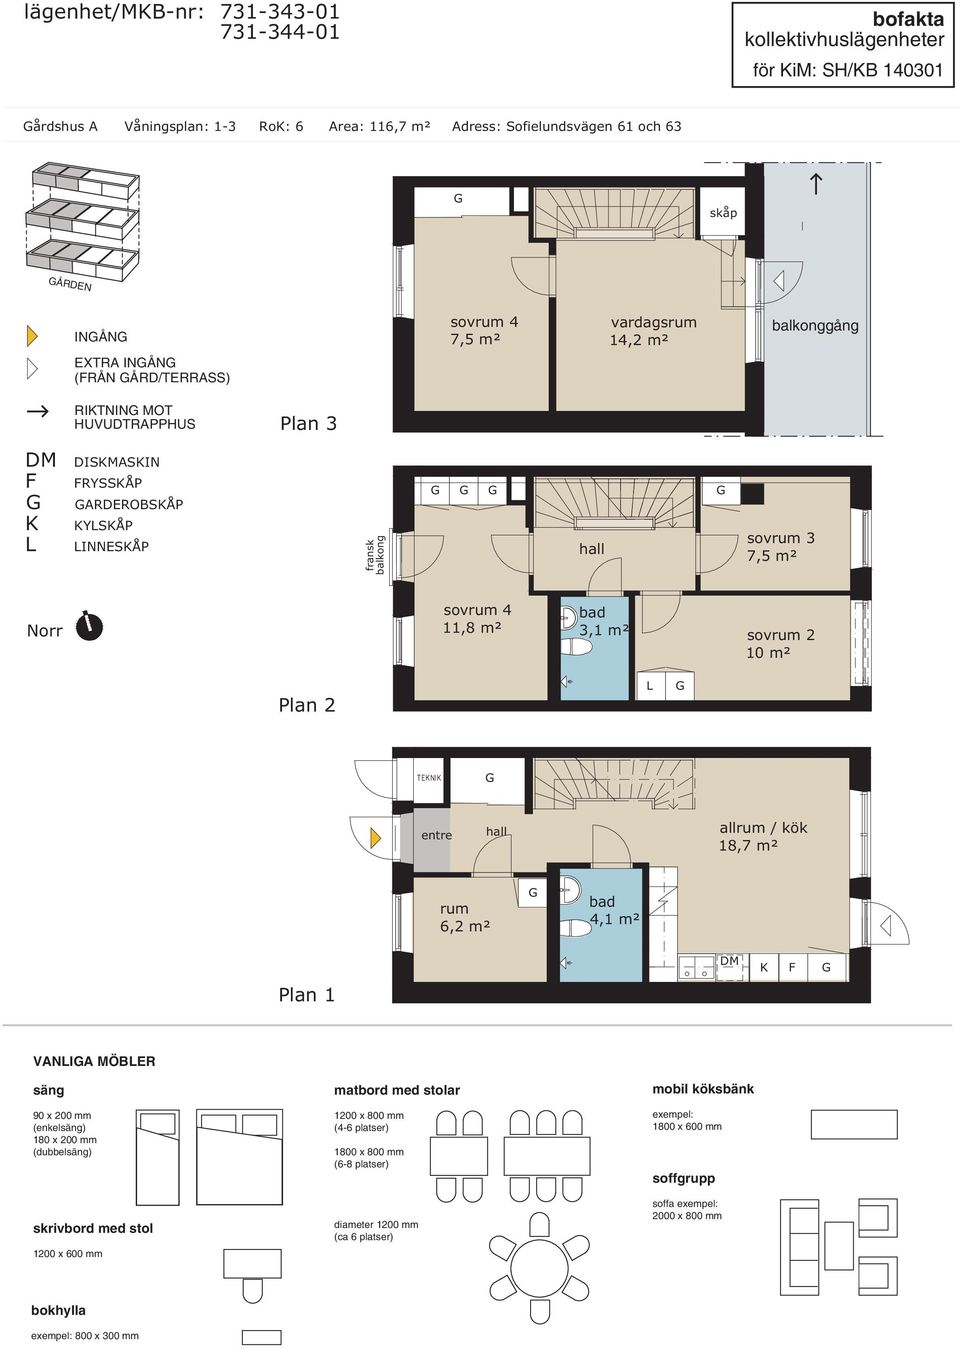 RITNIN MOT Plan 3 DISMASIN RYSSÅP ARDEROBSÅP YSÅP INNESÅP fransk balkong sovrum 3 7,5 m² sovrum 4 11,8 m²